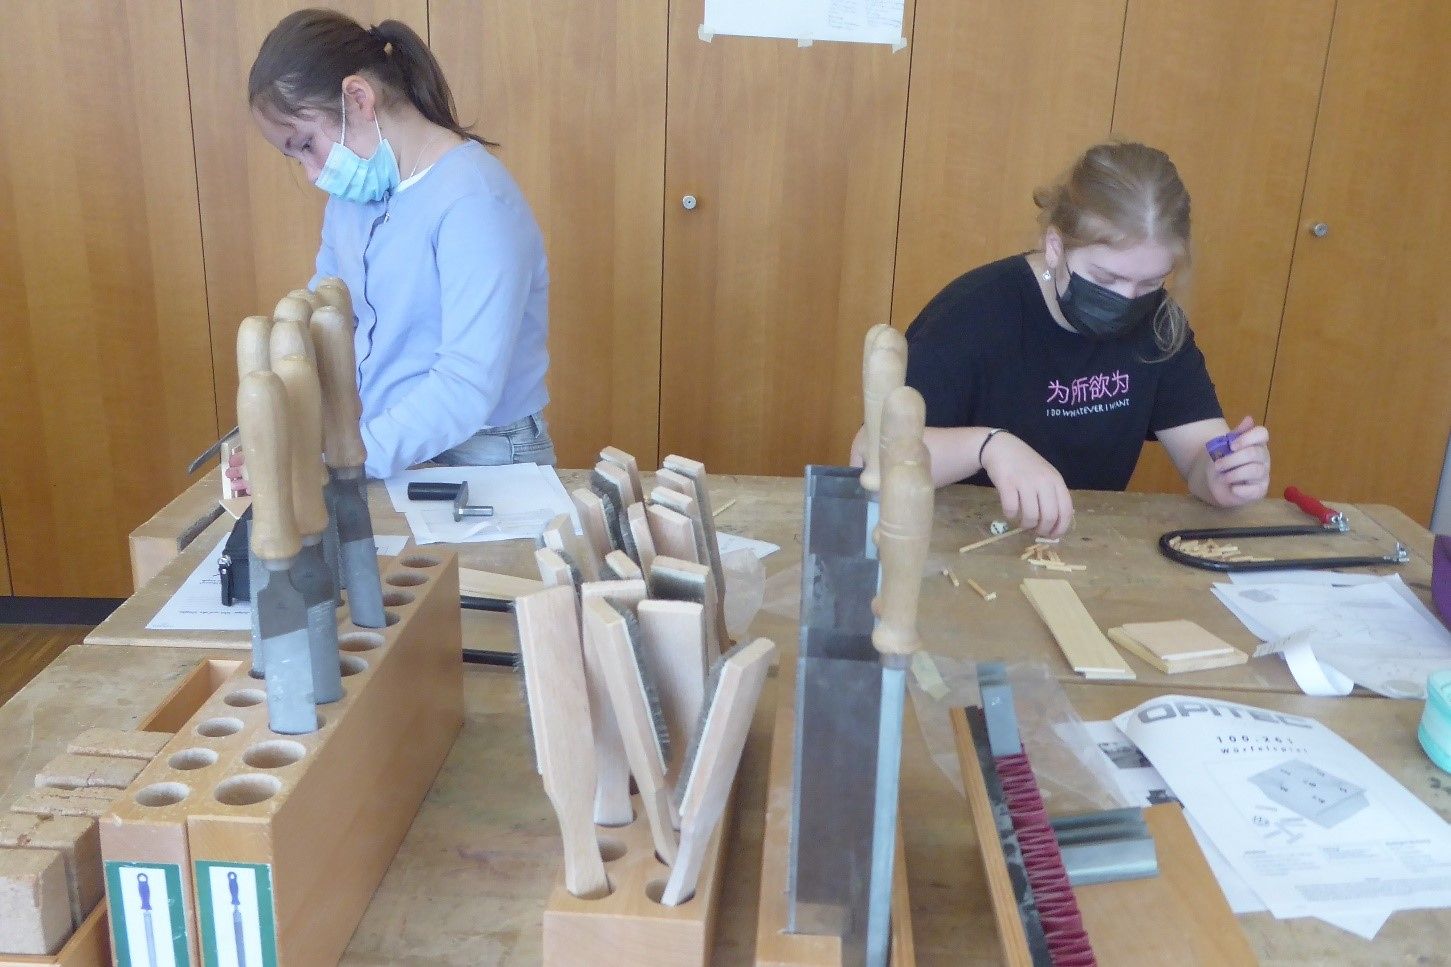 Zwei Mädchen stehen an einer Werkbank und machen Holzarbeiten